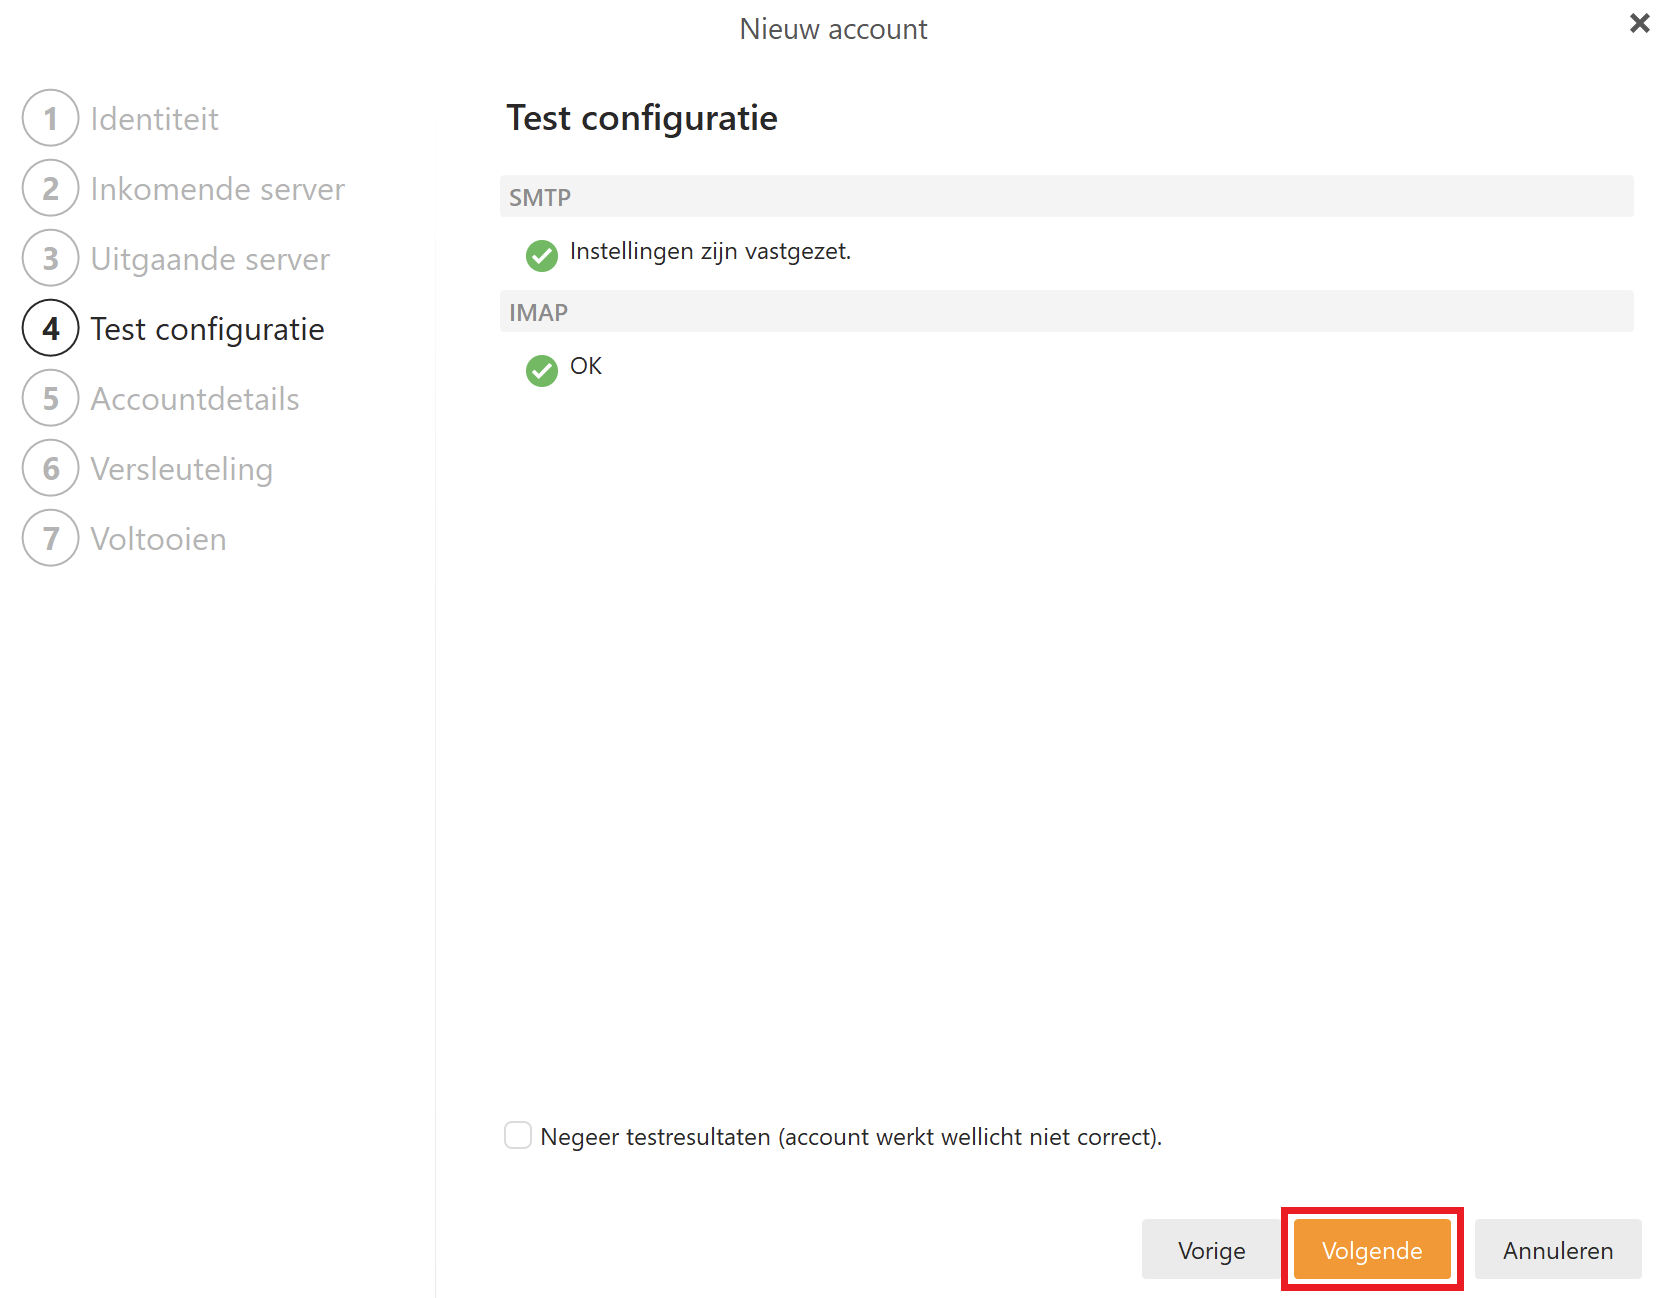 EM Client - Nieuw account - Test configuratie correct - Volgende.png